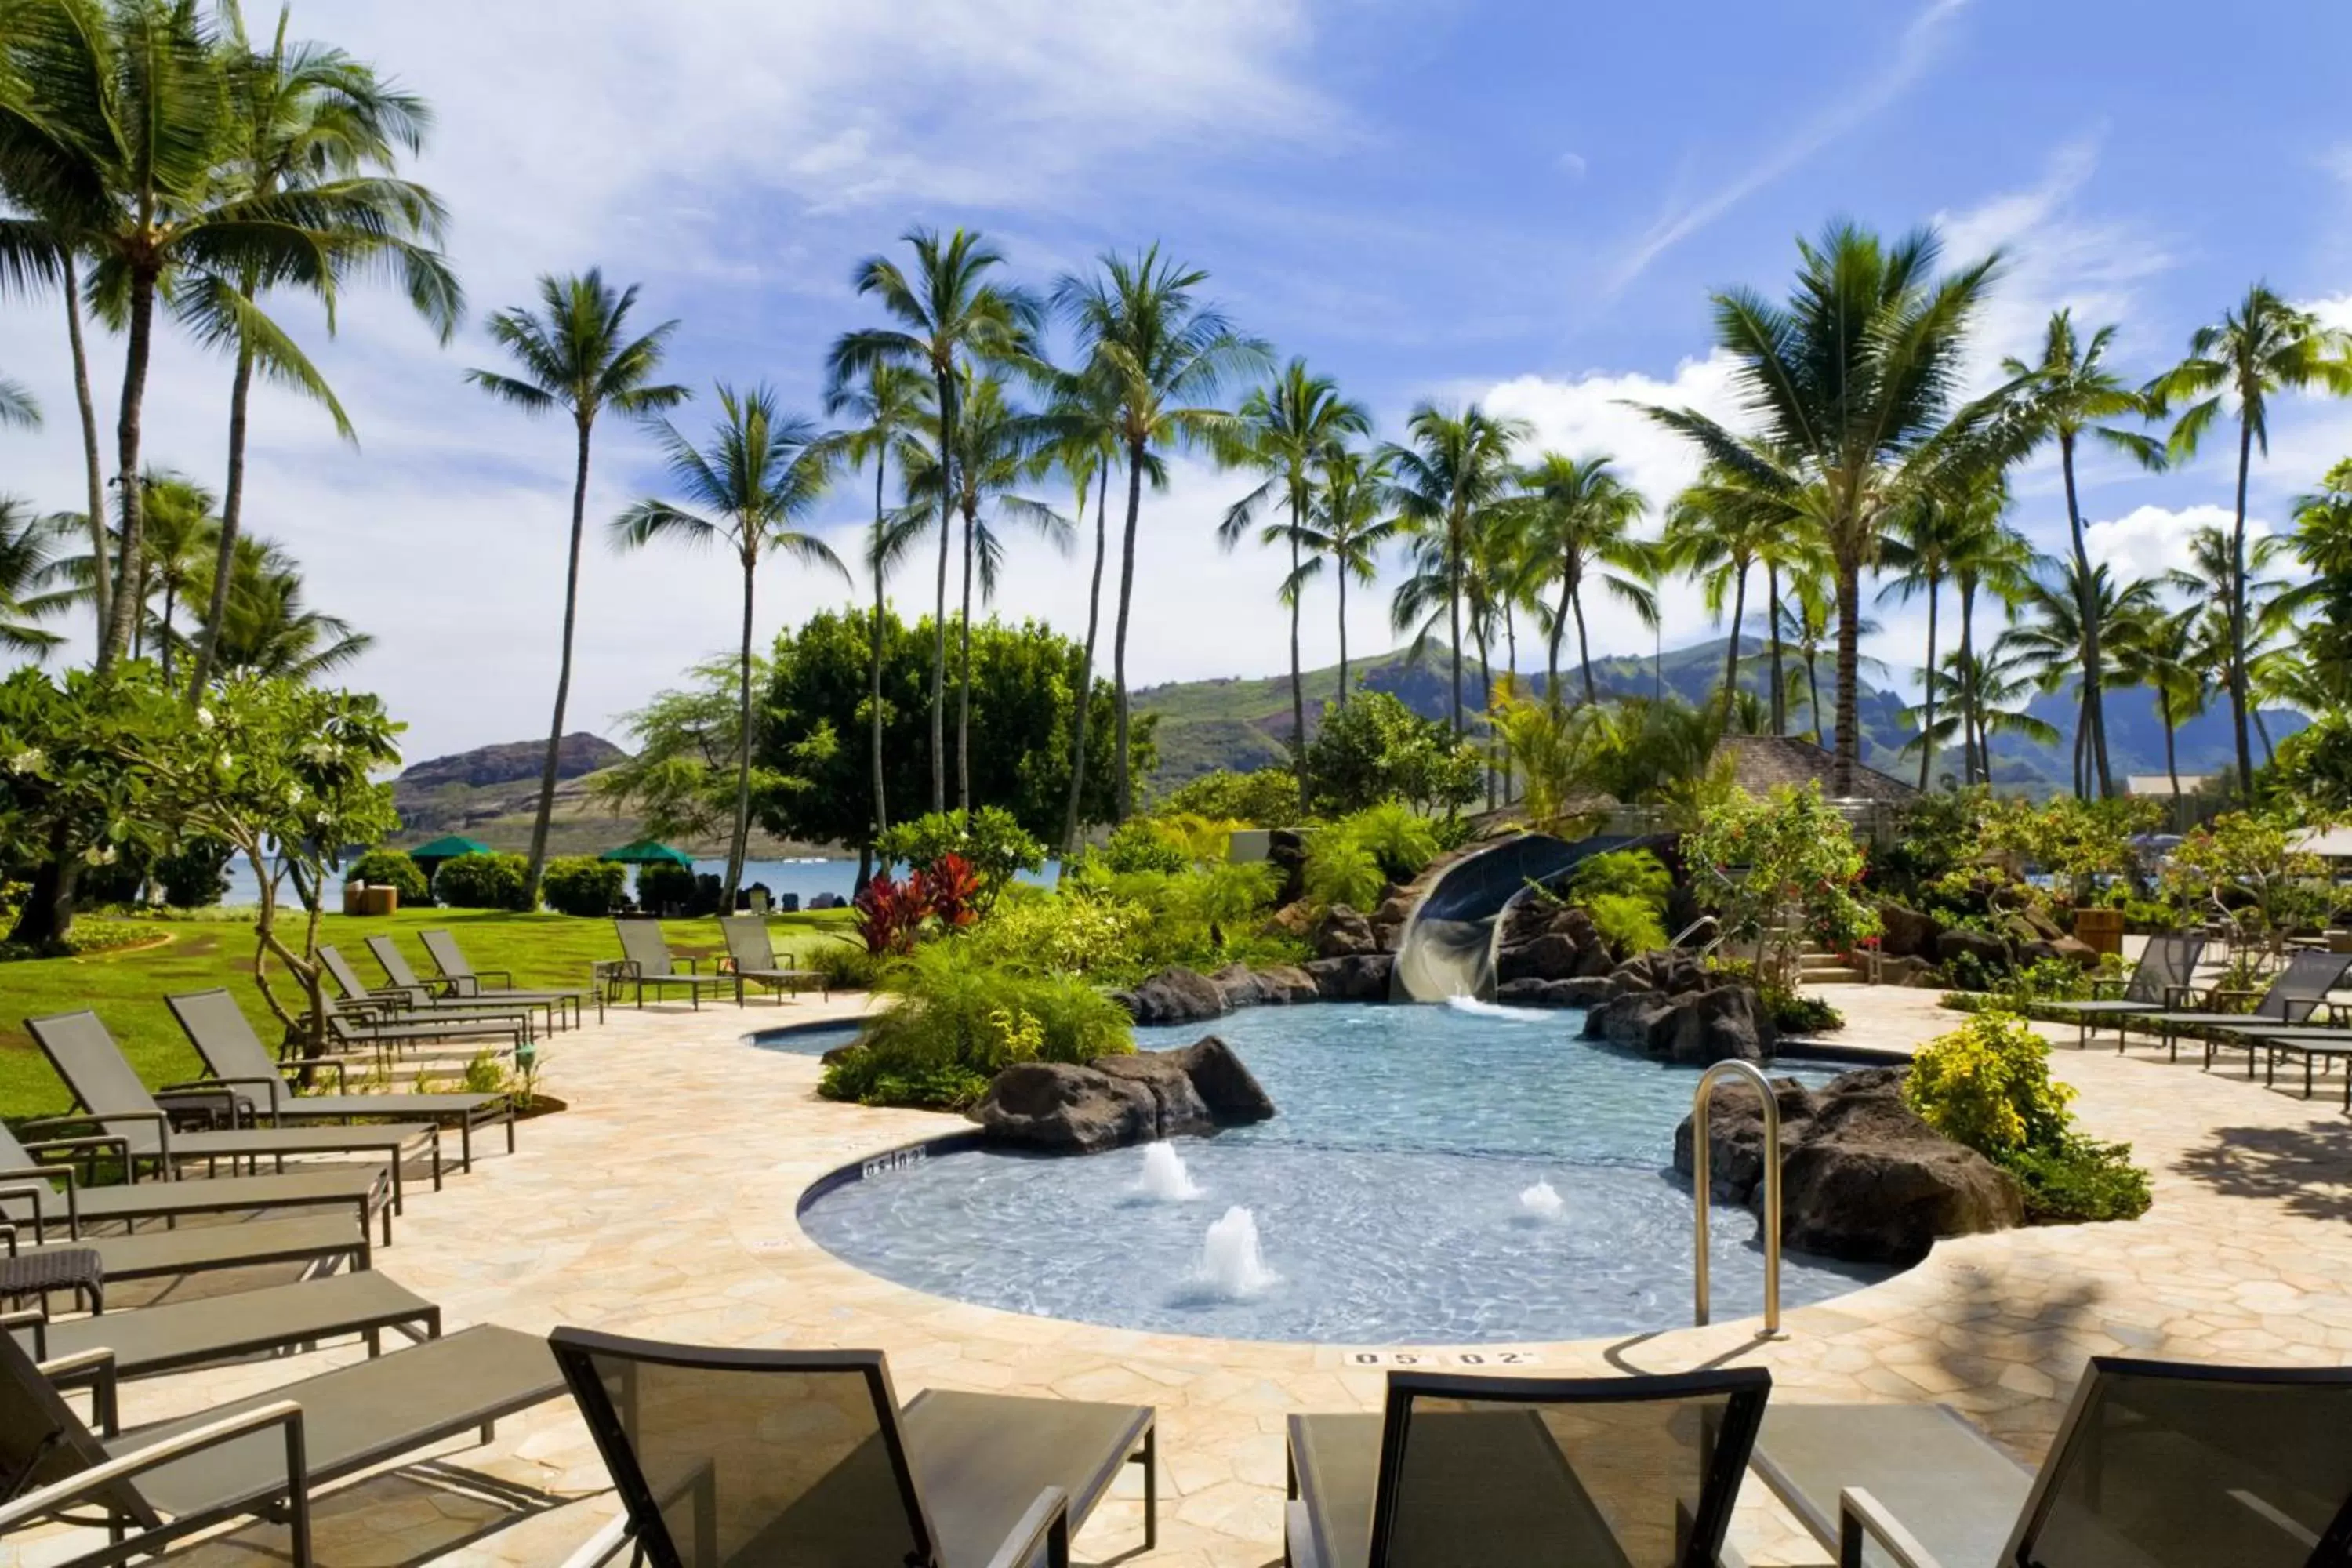 Swimming Pool in The Royal Sonesta Kauai Resort Lihue